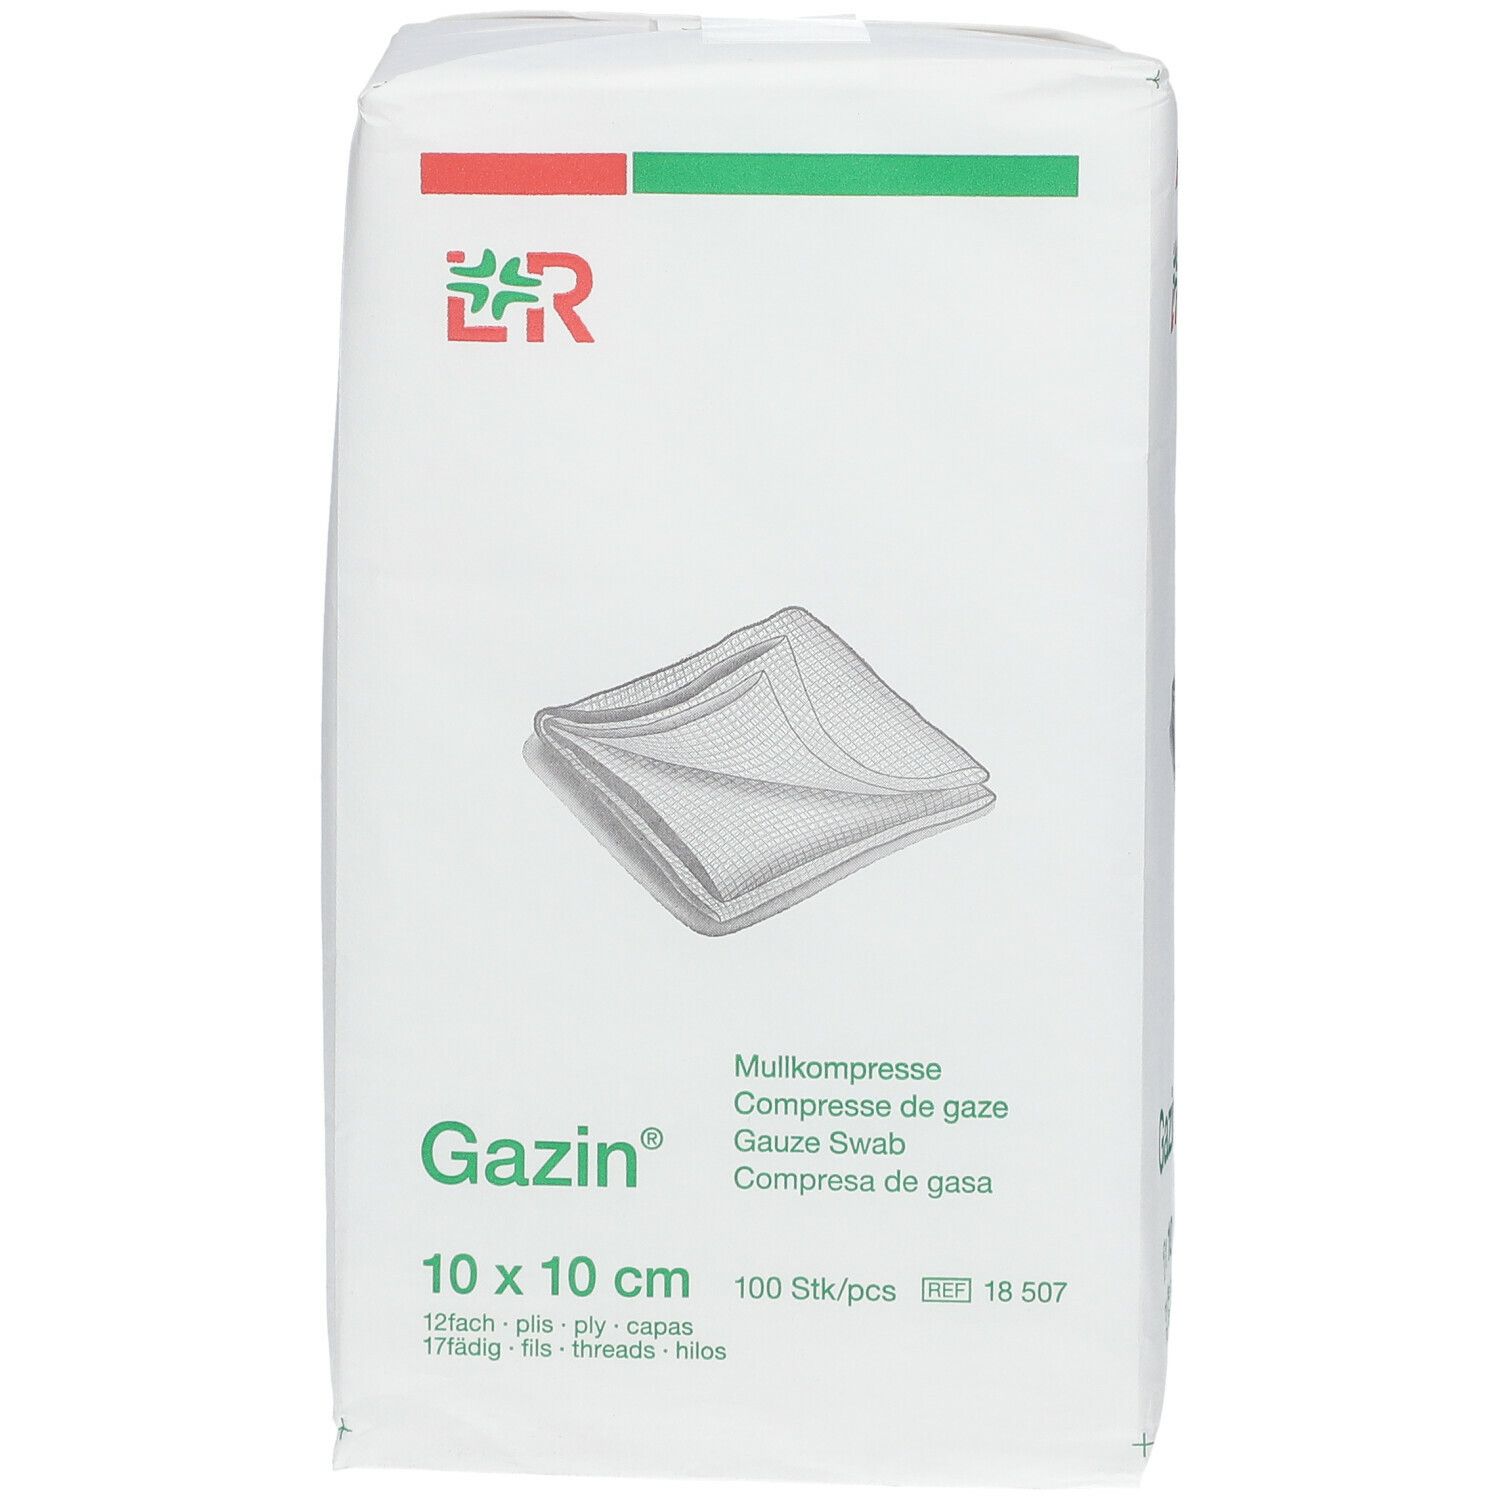 Lohmann & Rauscher Gazin® Compresse di Garza 10 x 10 cm Non Sterili